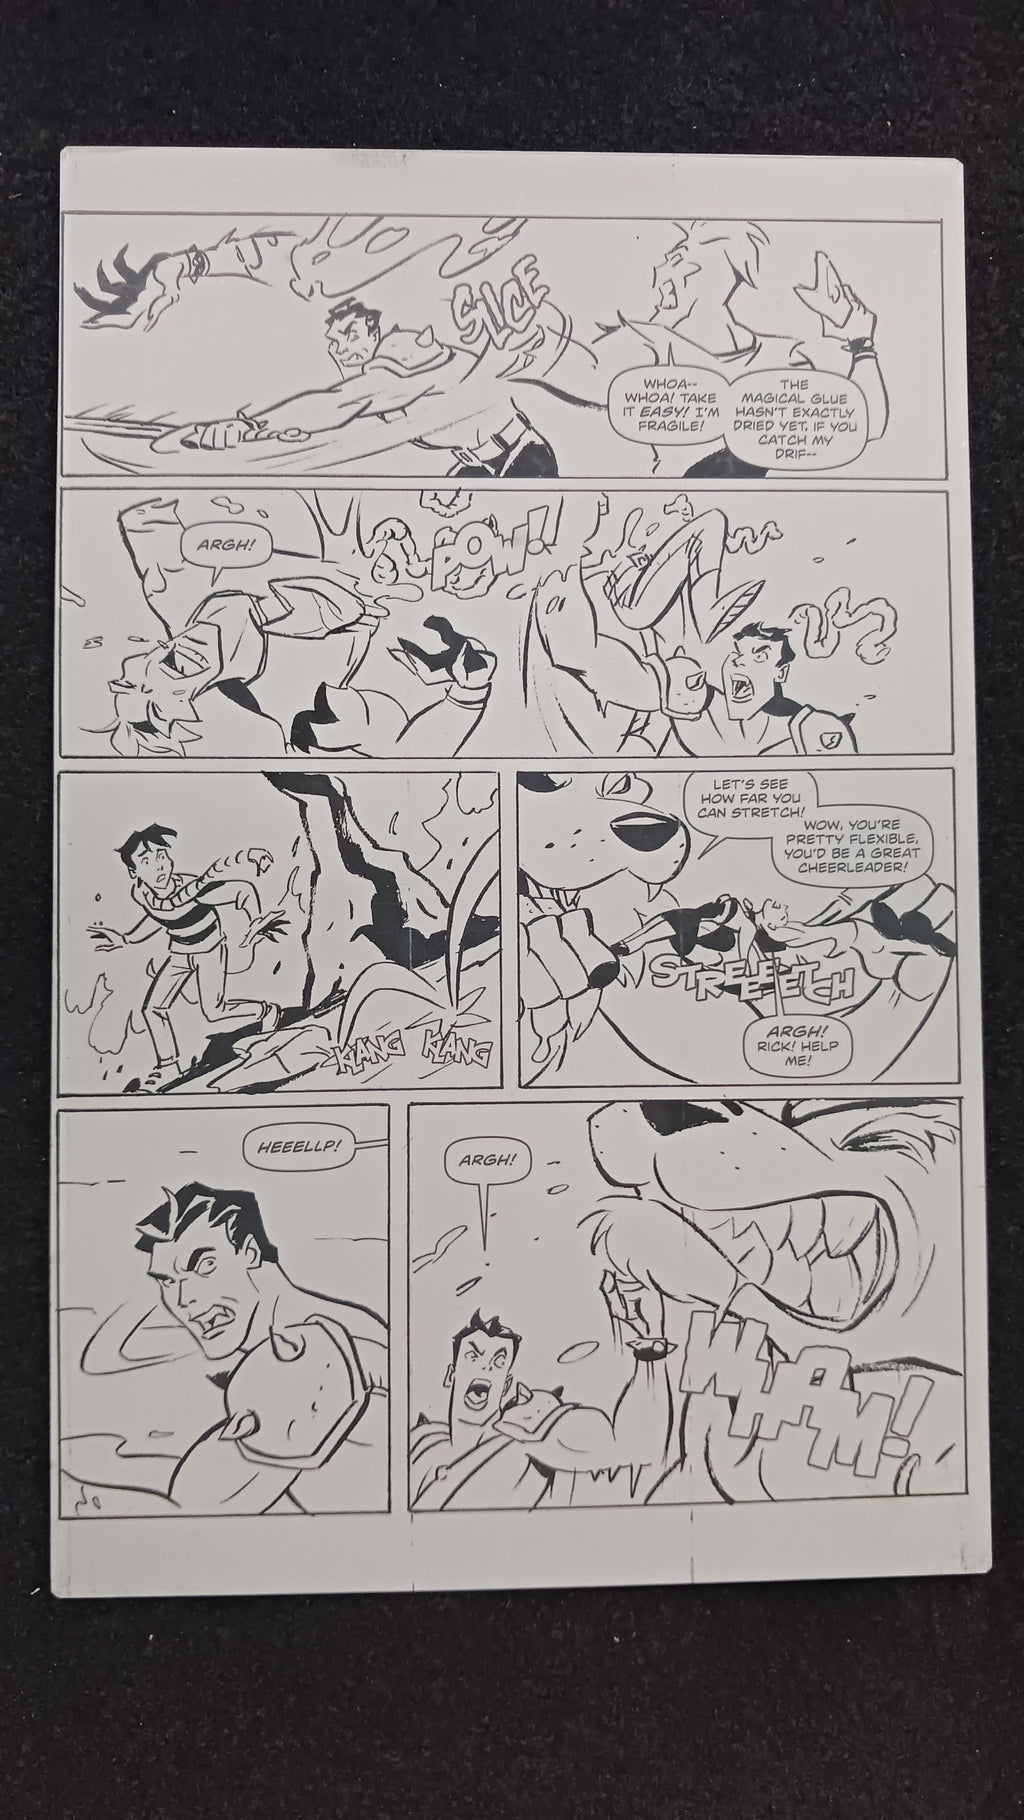 Headless Season 2 #3 - Page 15 - PRESSWORKS - Comic Art -  Printer Plate - Black